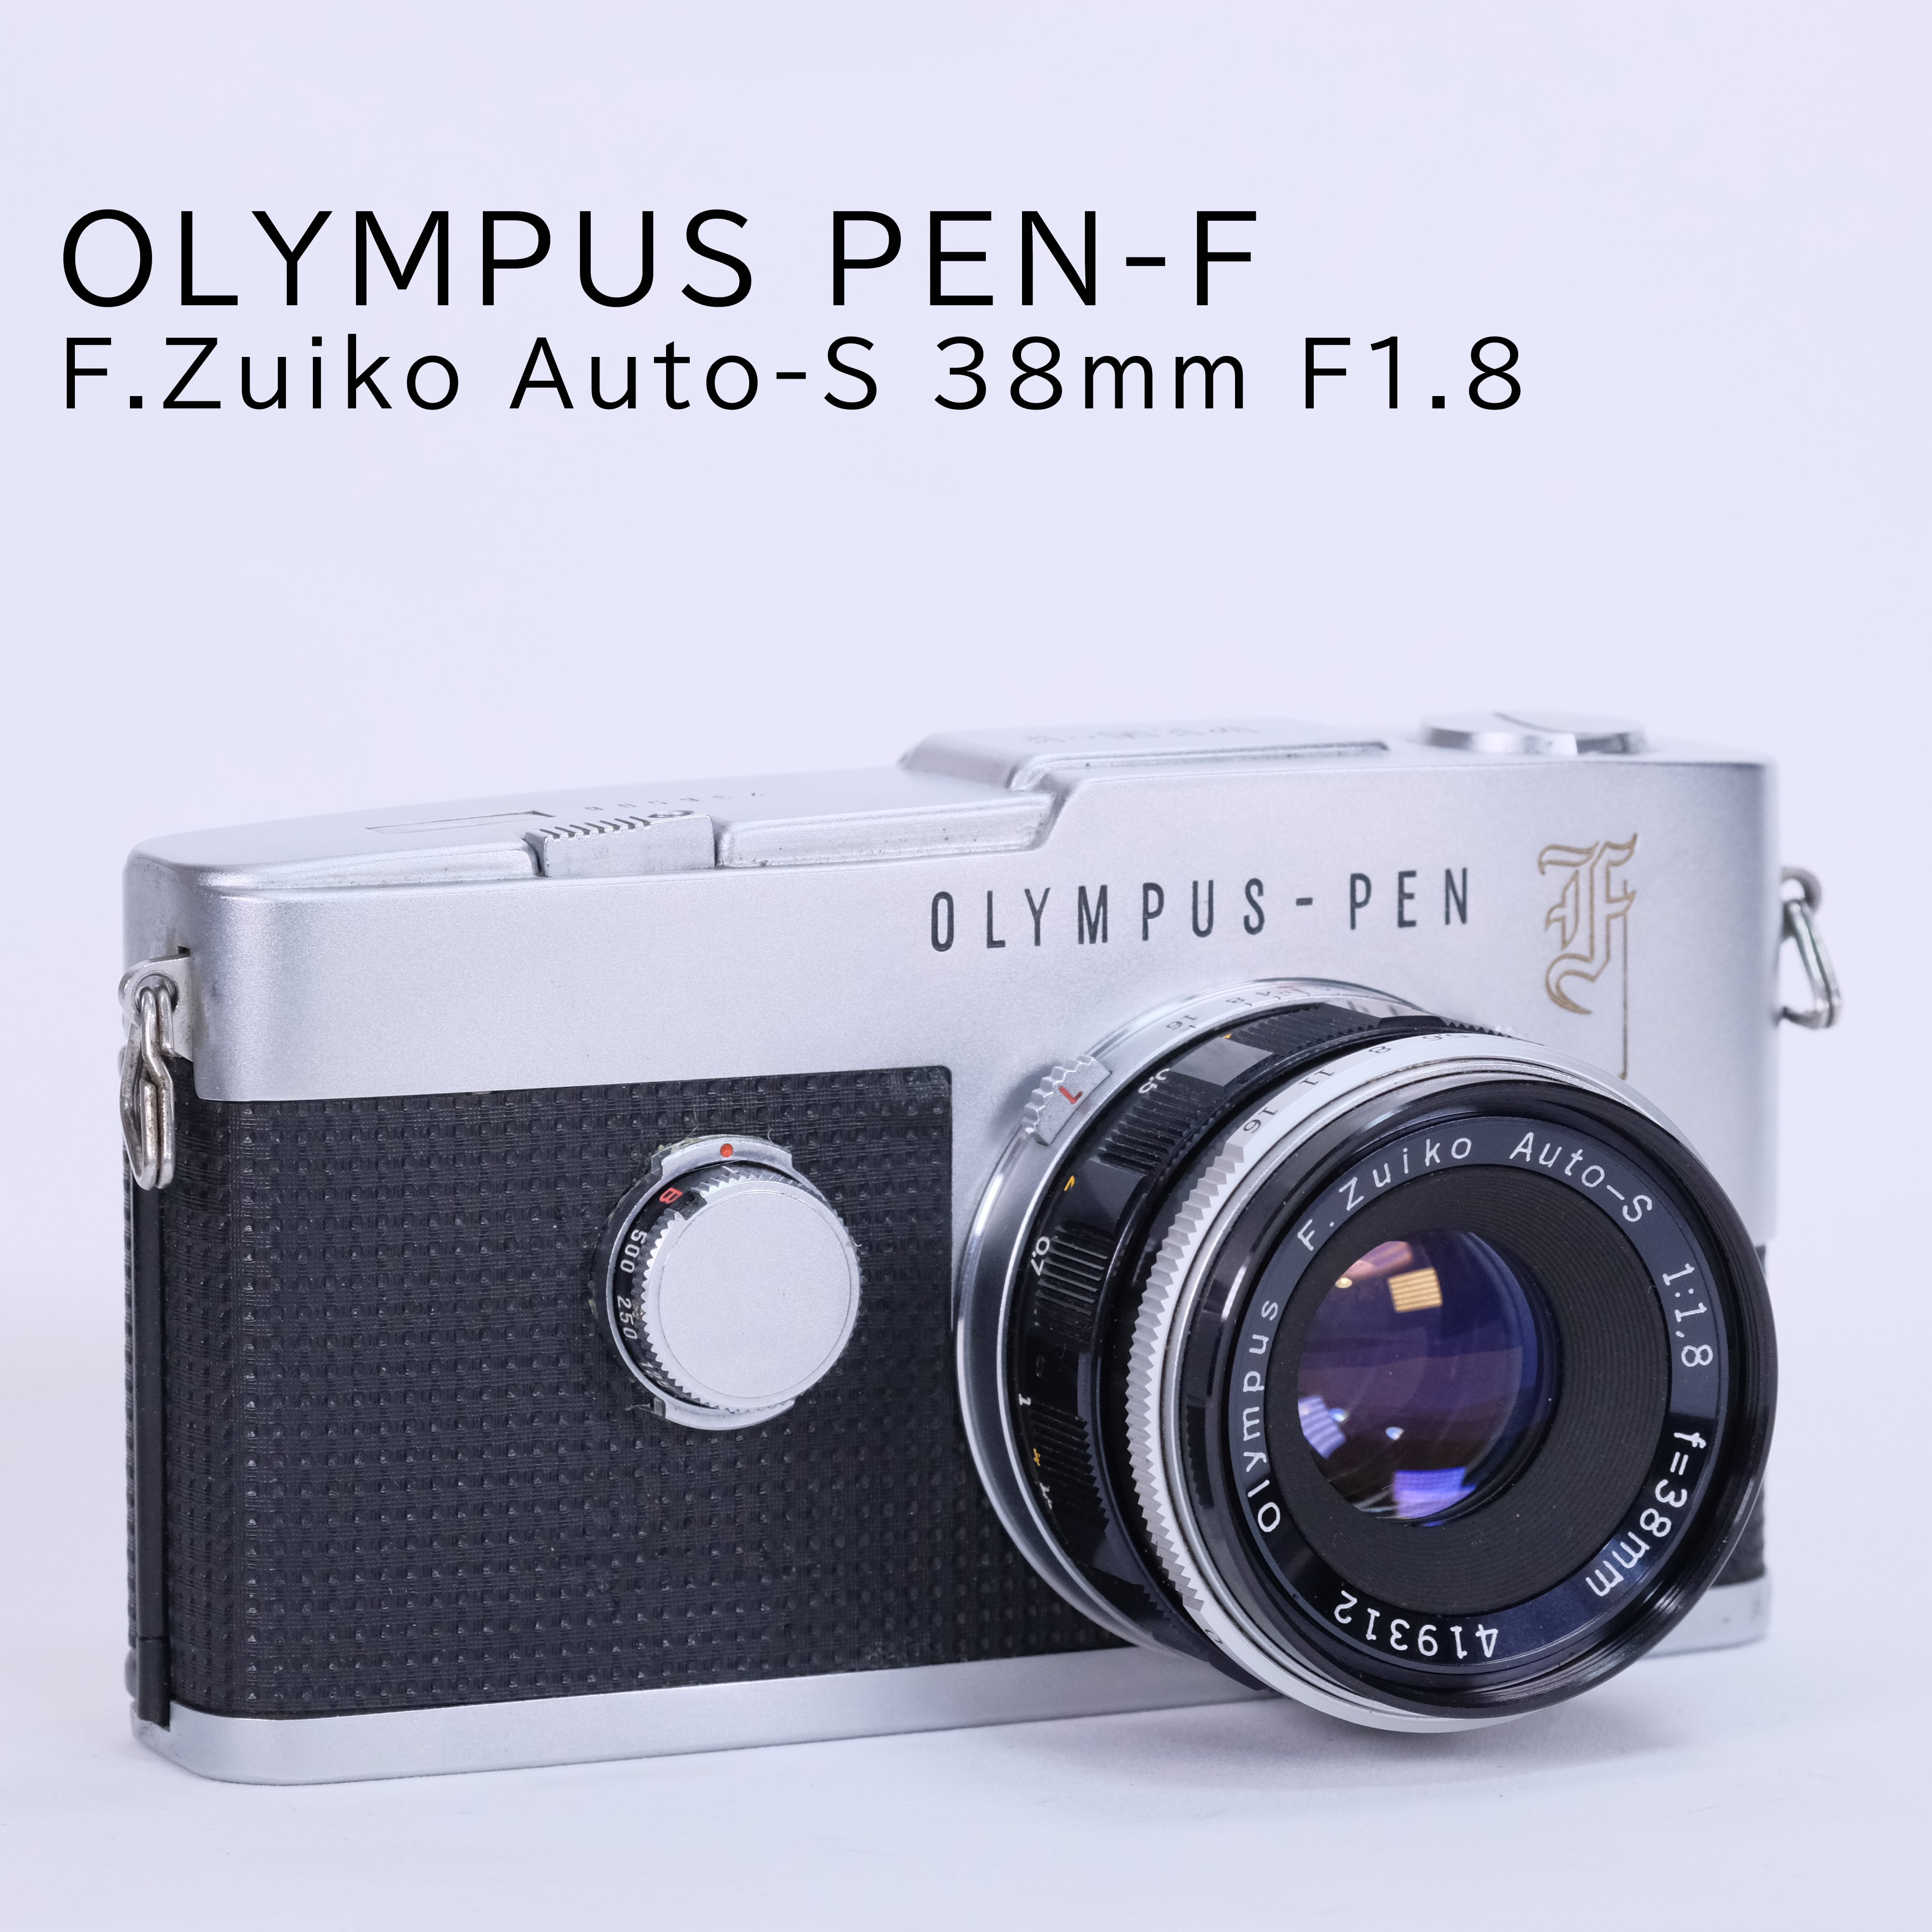 OLYMPUS PEN-F F.Zuiko F1.8 f=38㎜